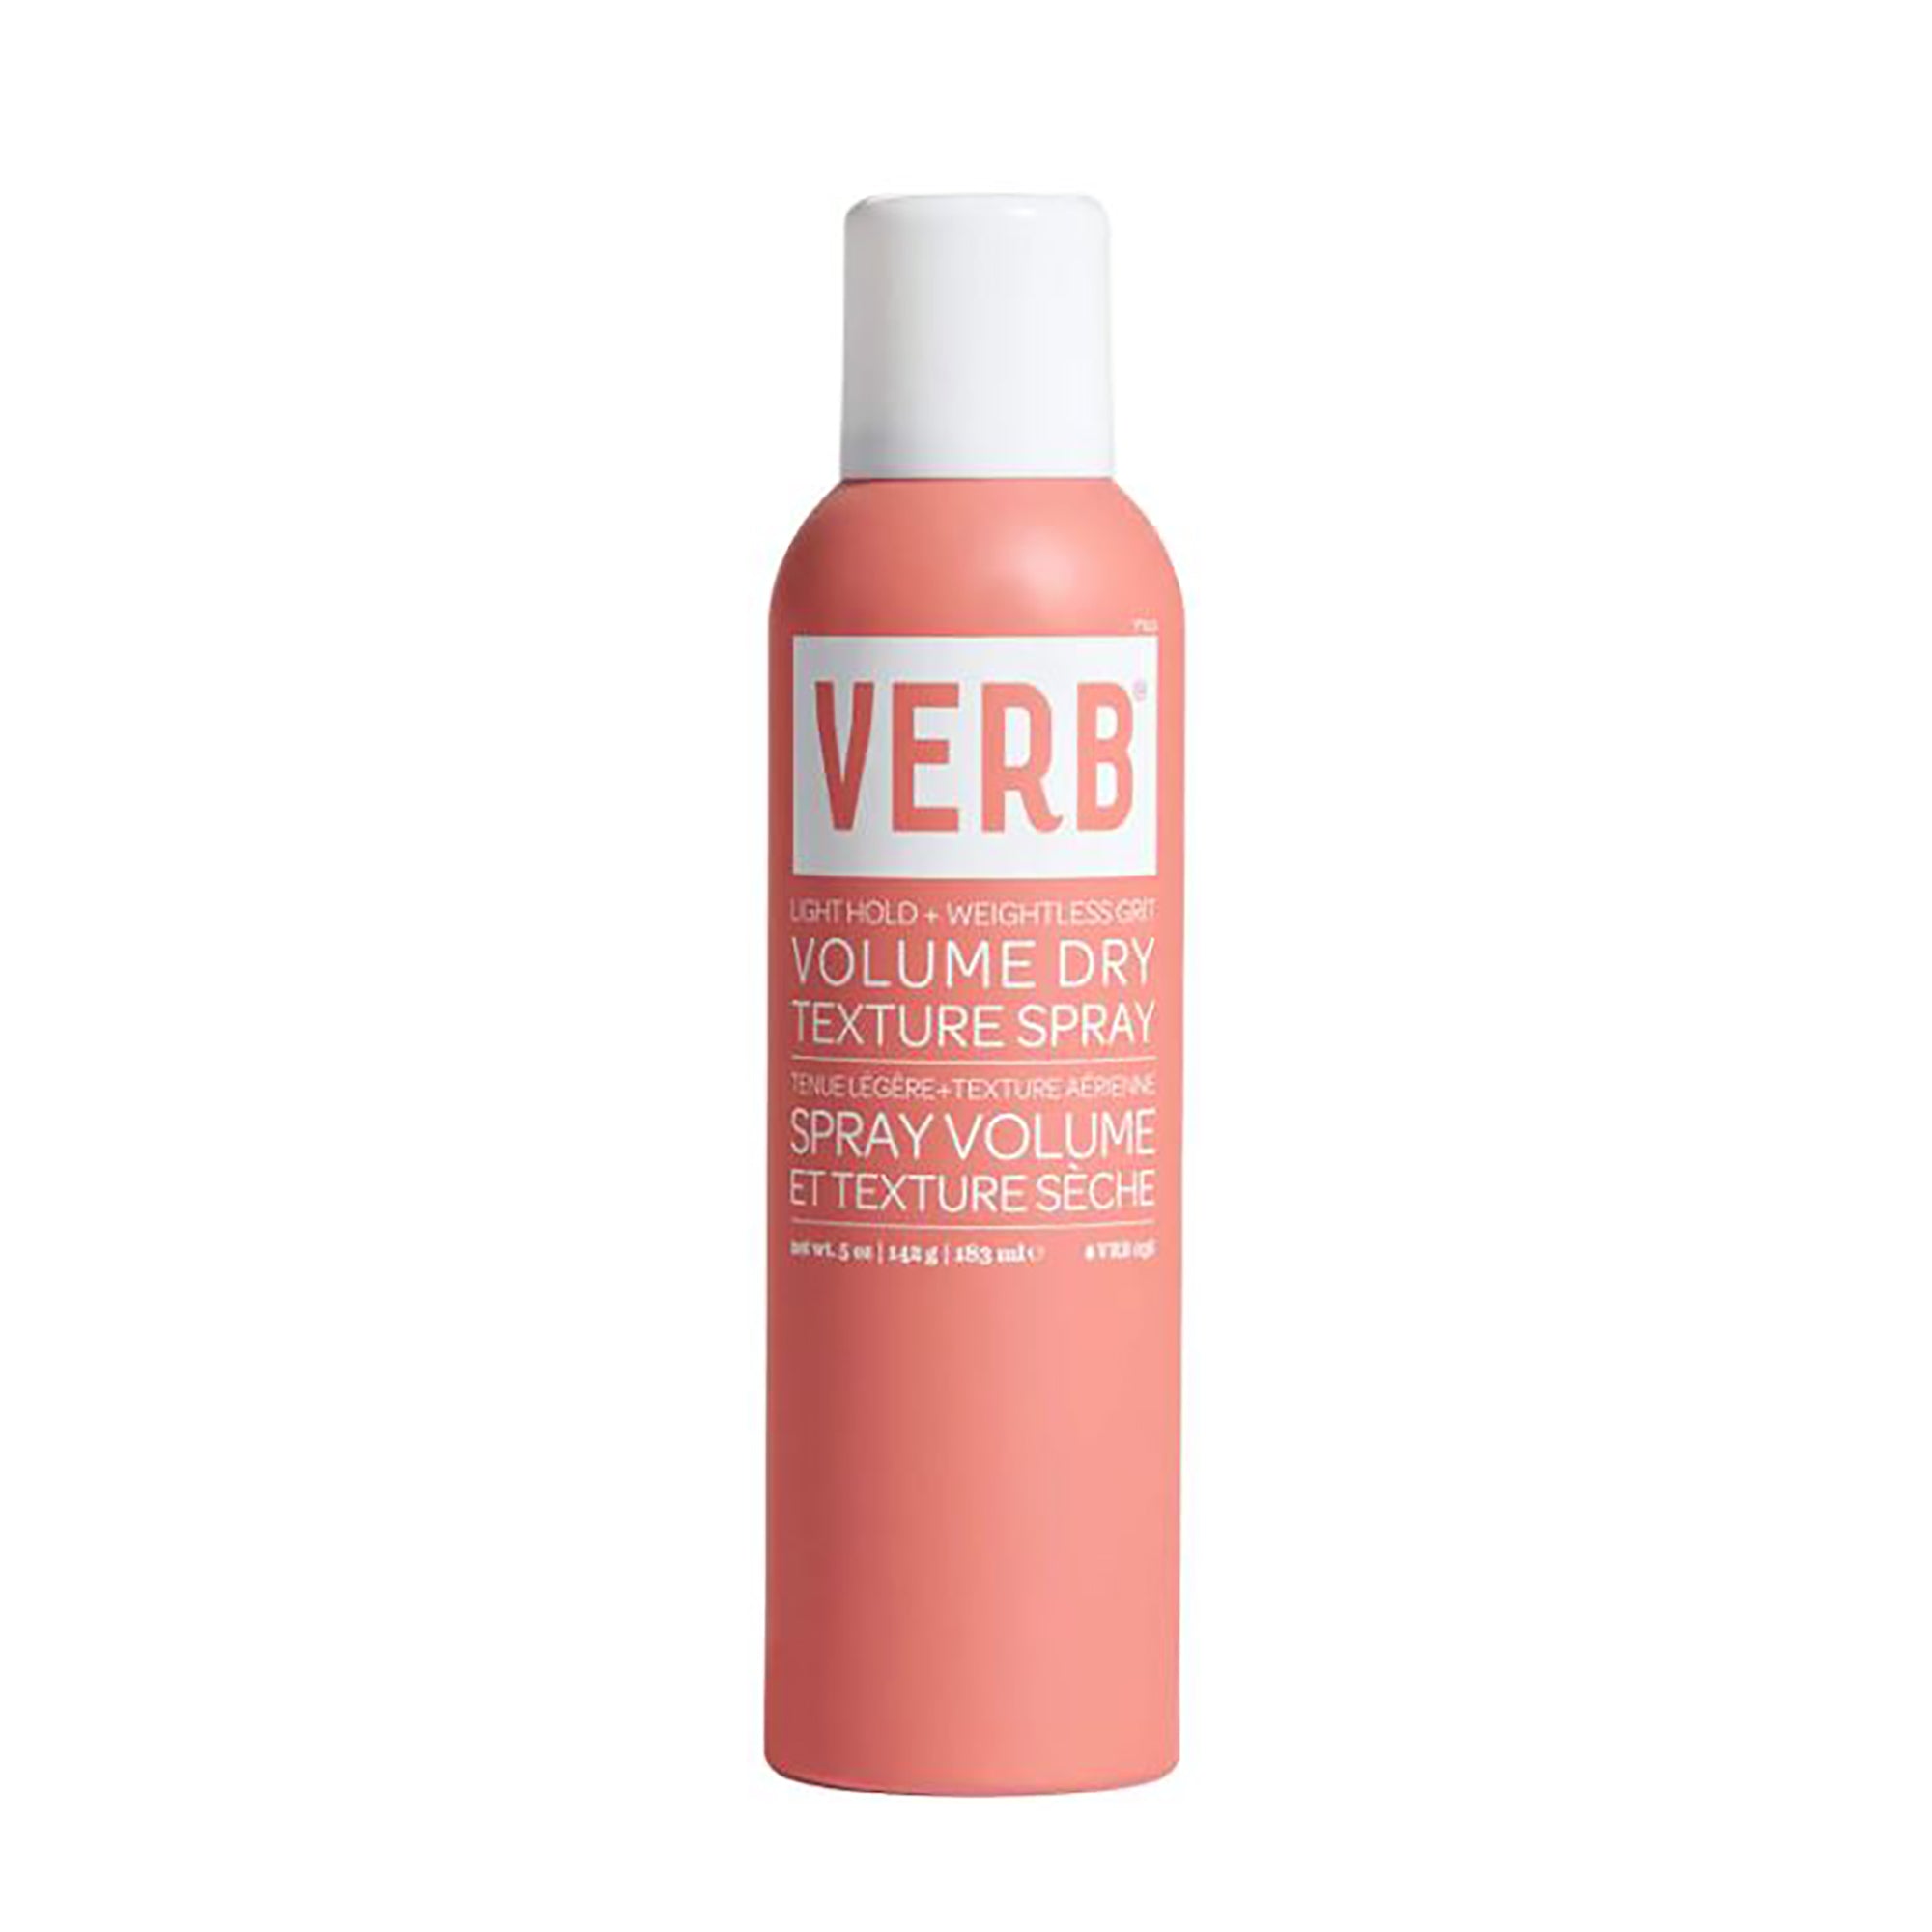 Verb Volume Dry Texture Spray / 5 OZ